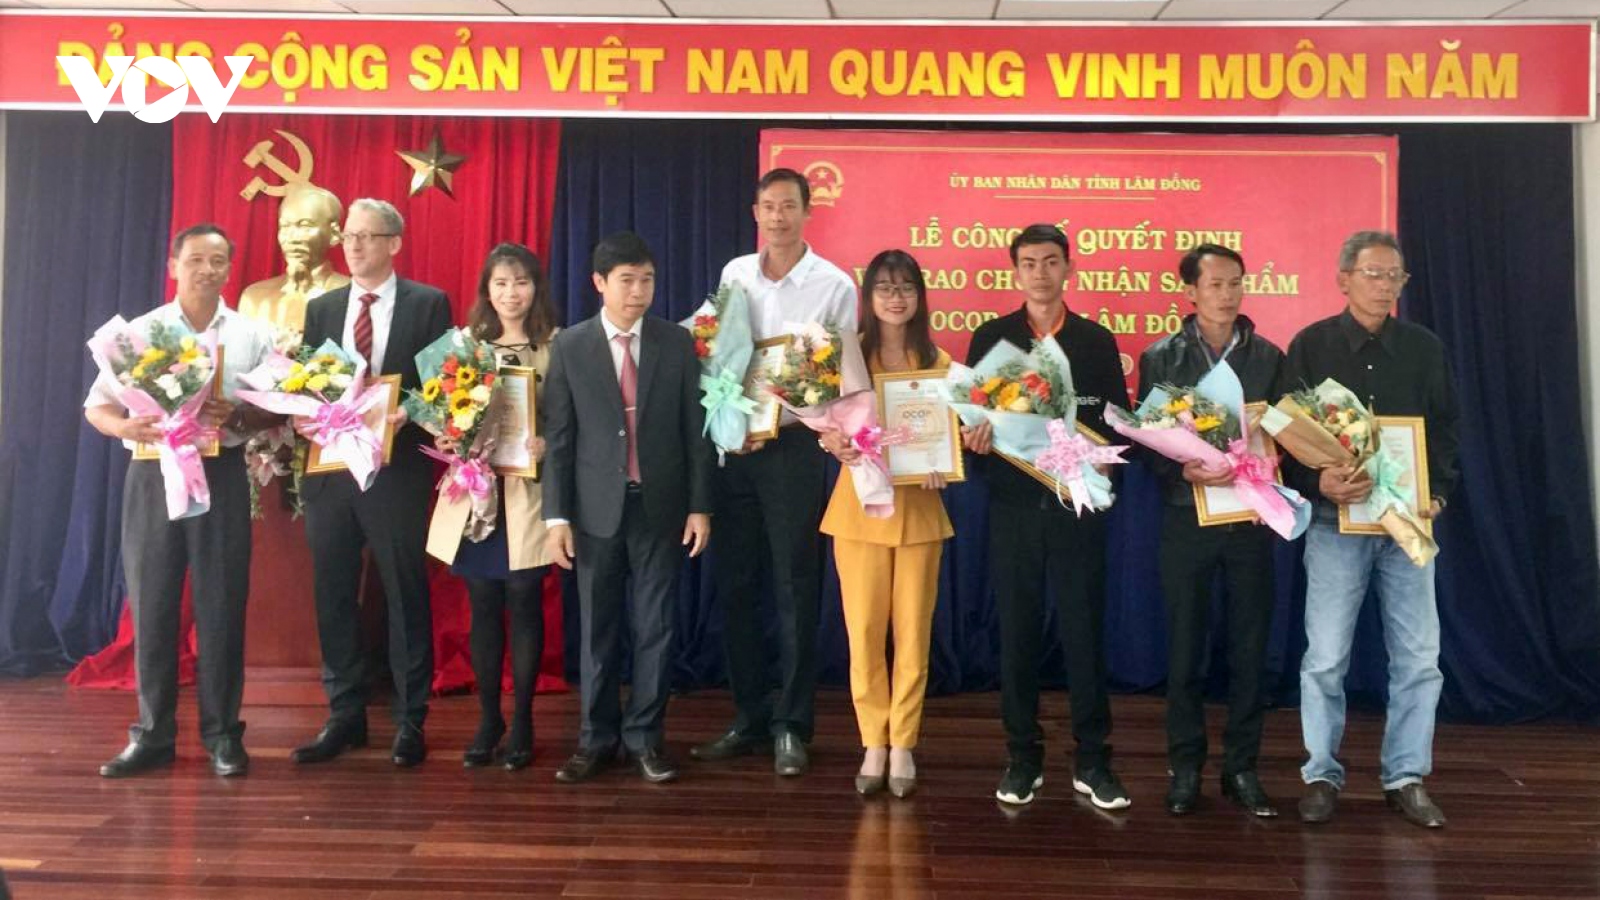 45 sản phẩm OCOP ở Lâm Đồng được cấp giấy chứng nhận từ 3 - 4 sao